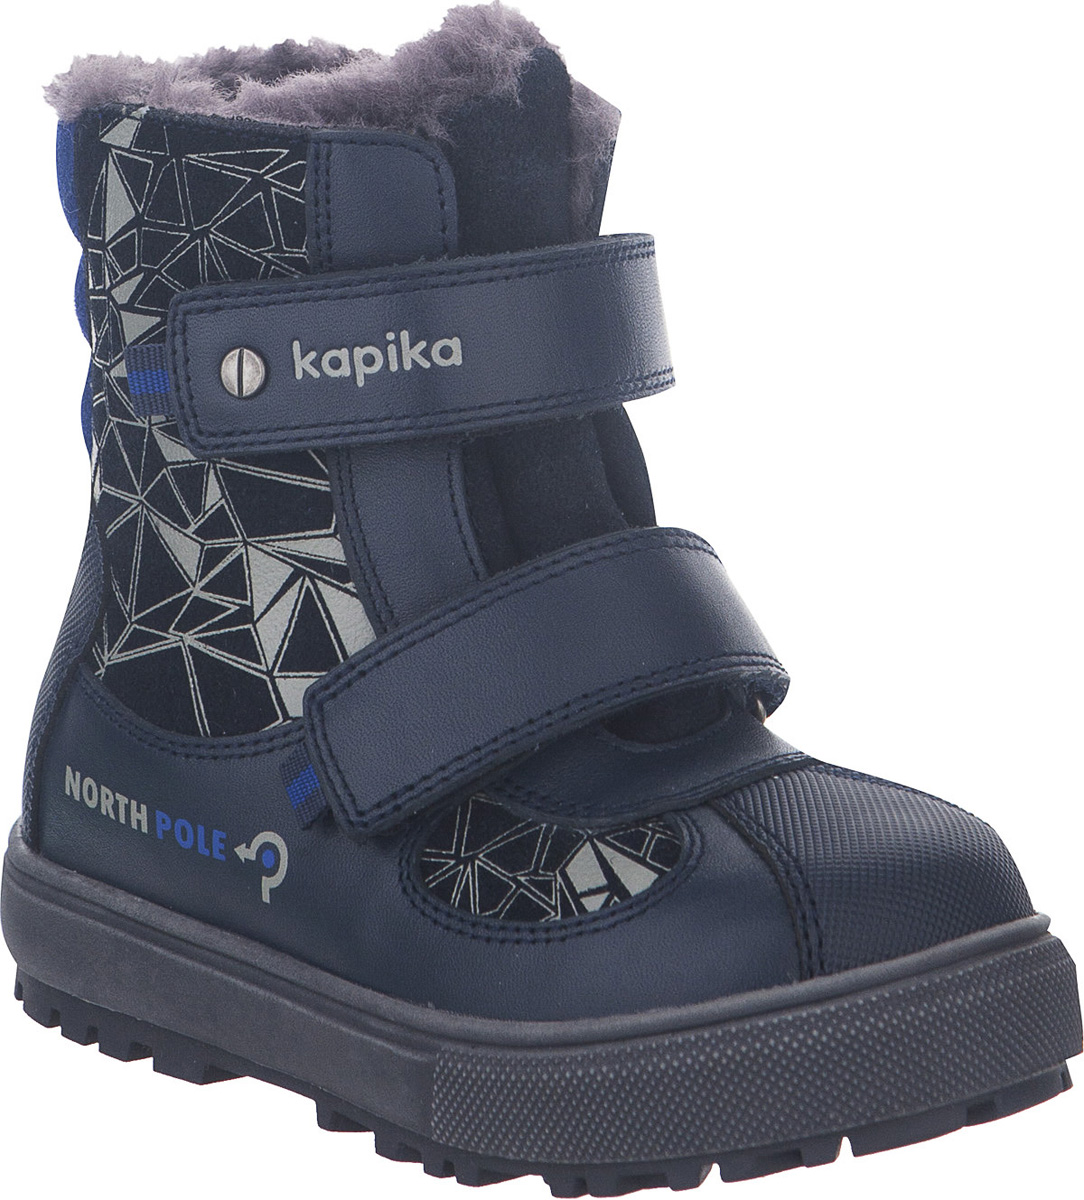 Ботинки для мальчика Kapika, цвет: темно-синий. 62107. Размер 23